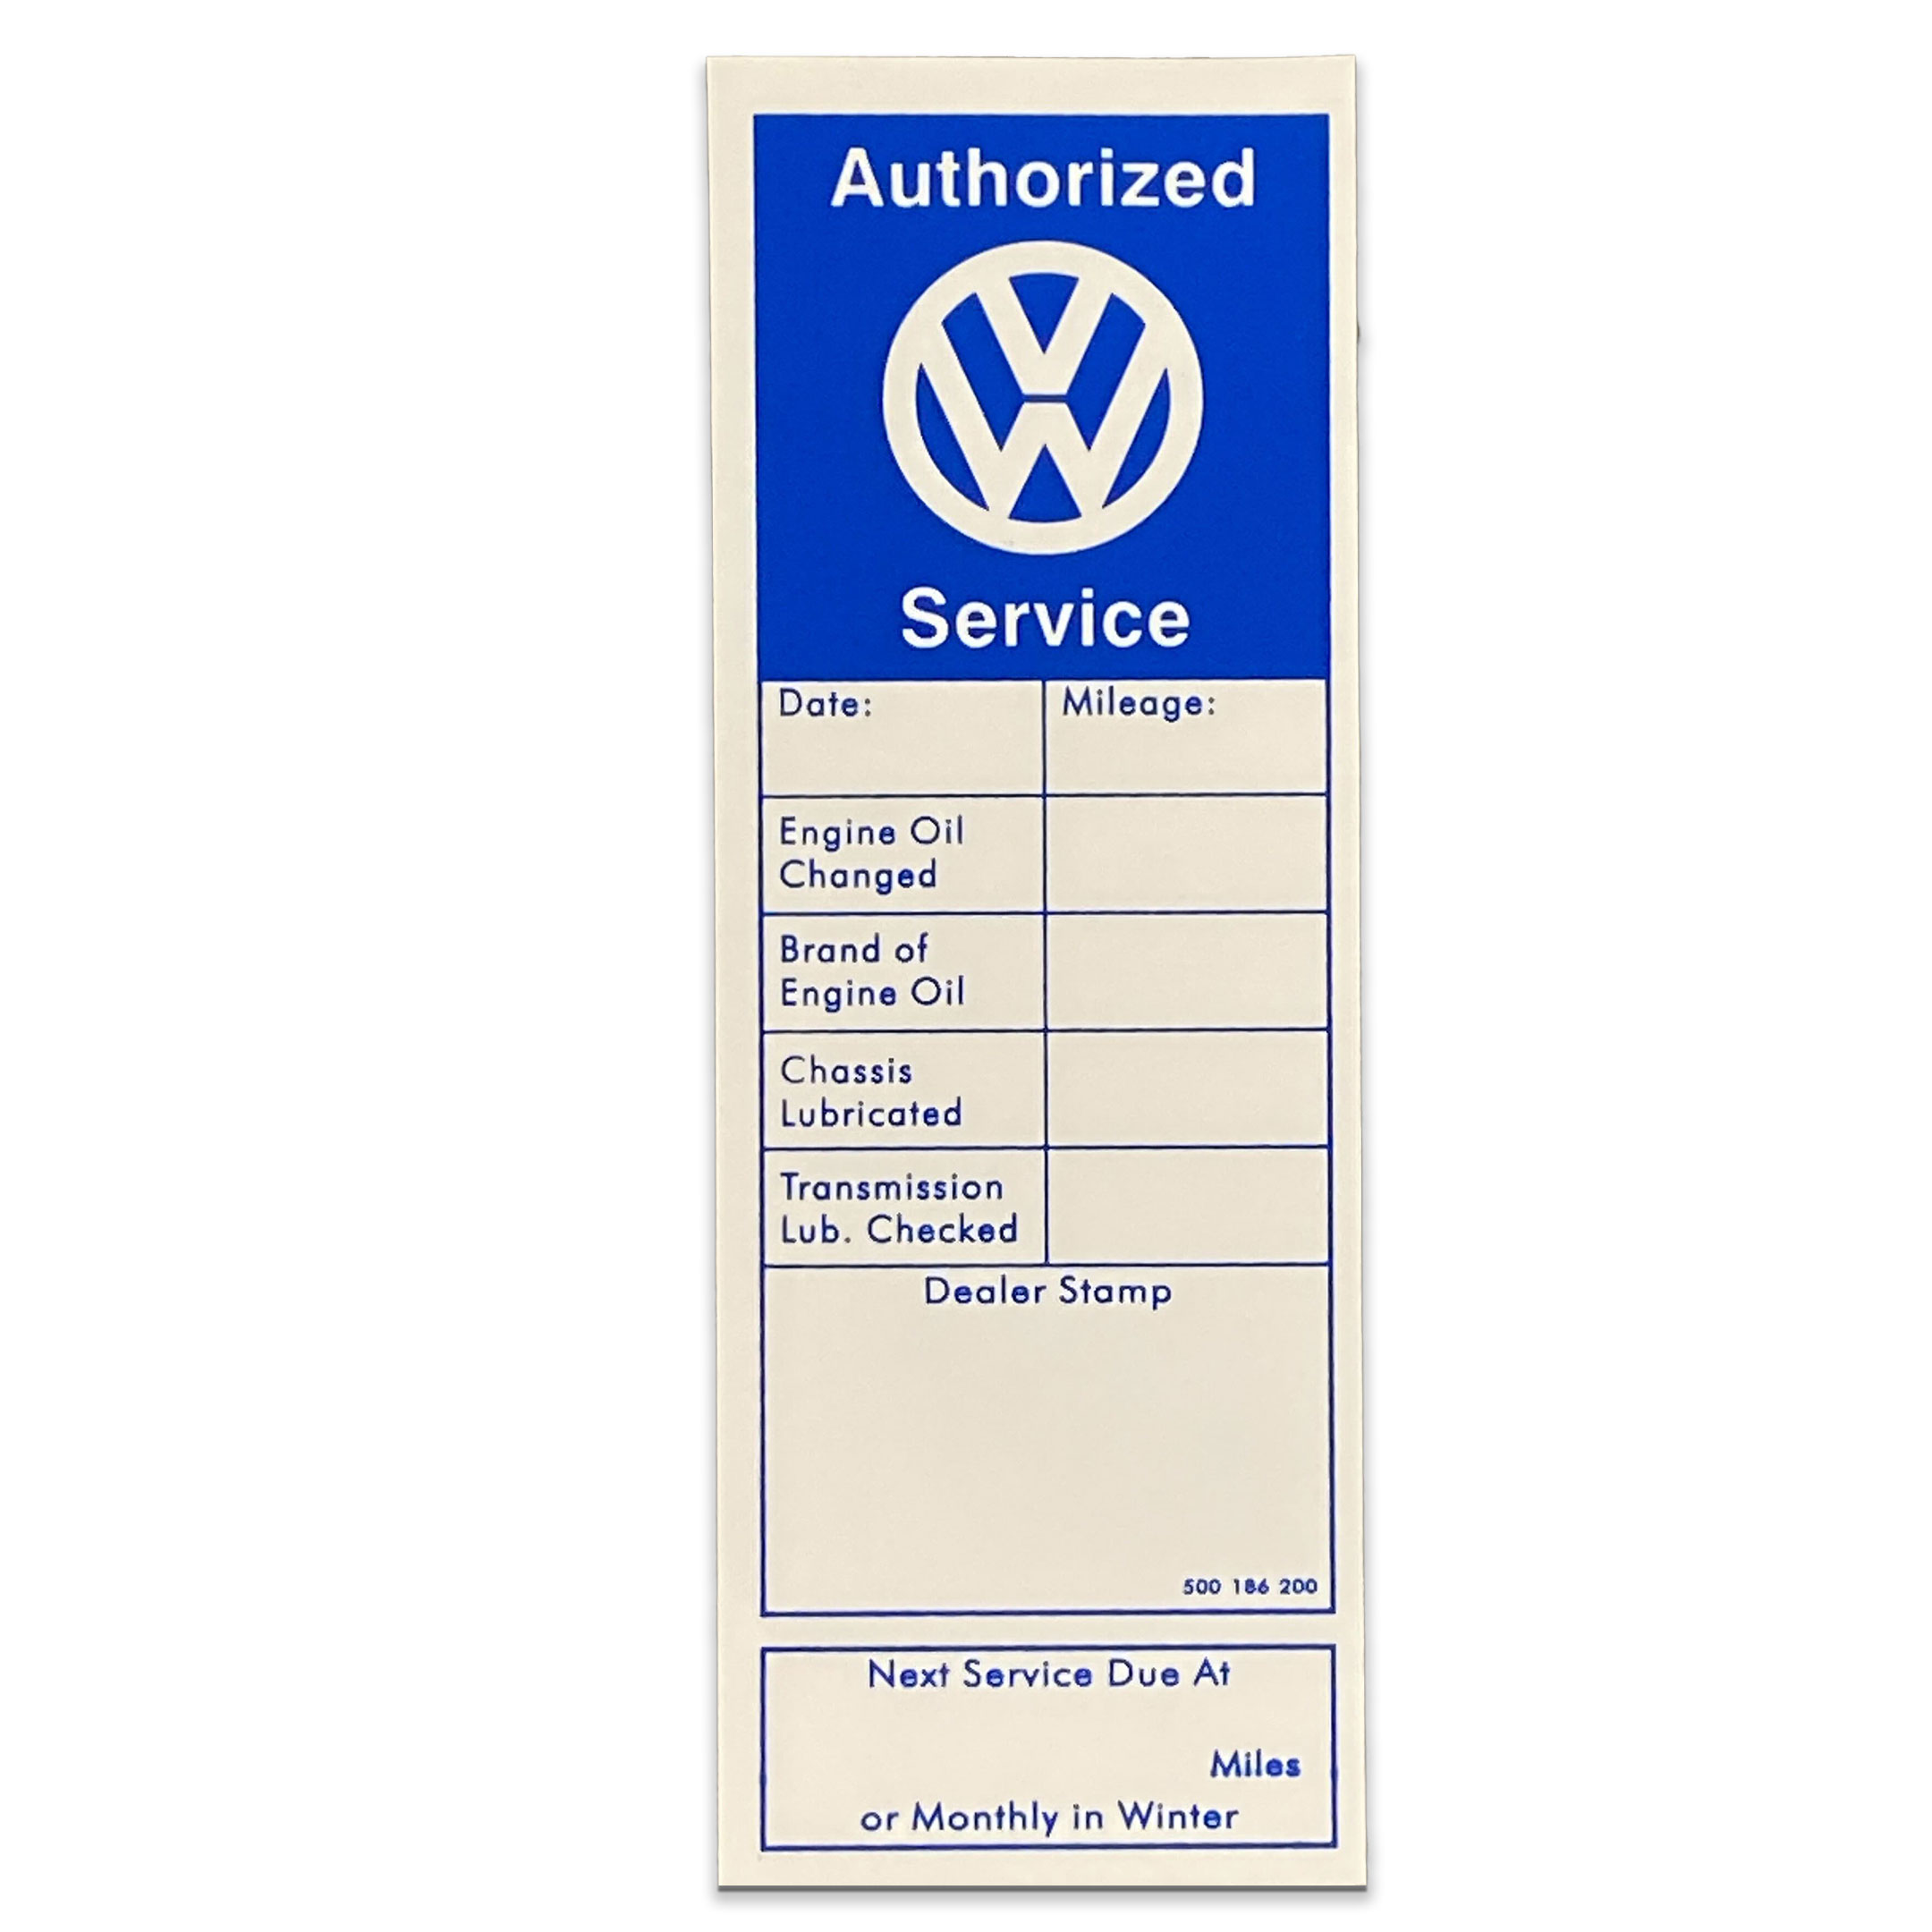 VW Authorized Service Sticker - XVW75H